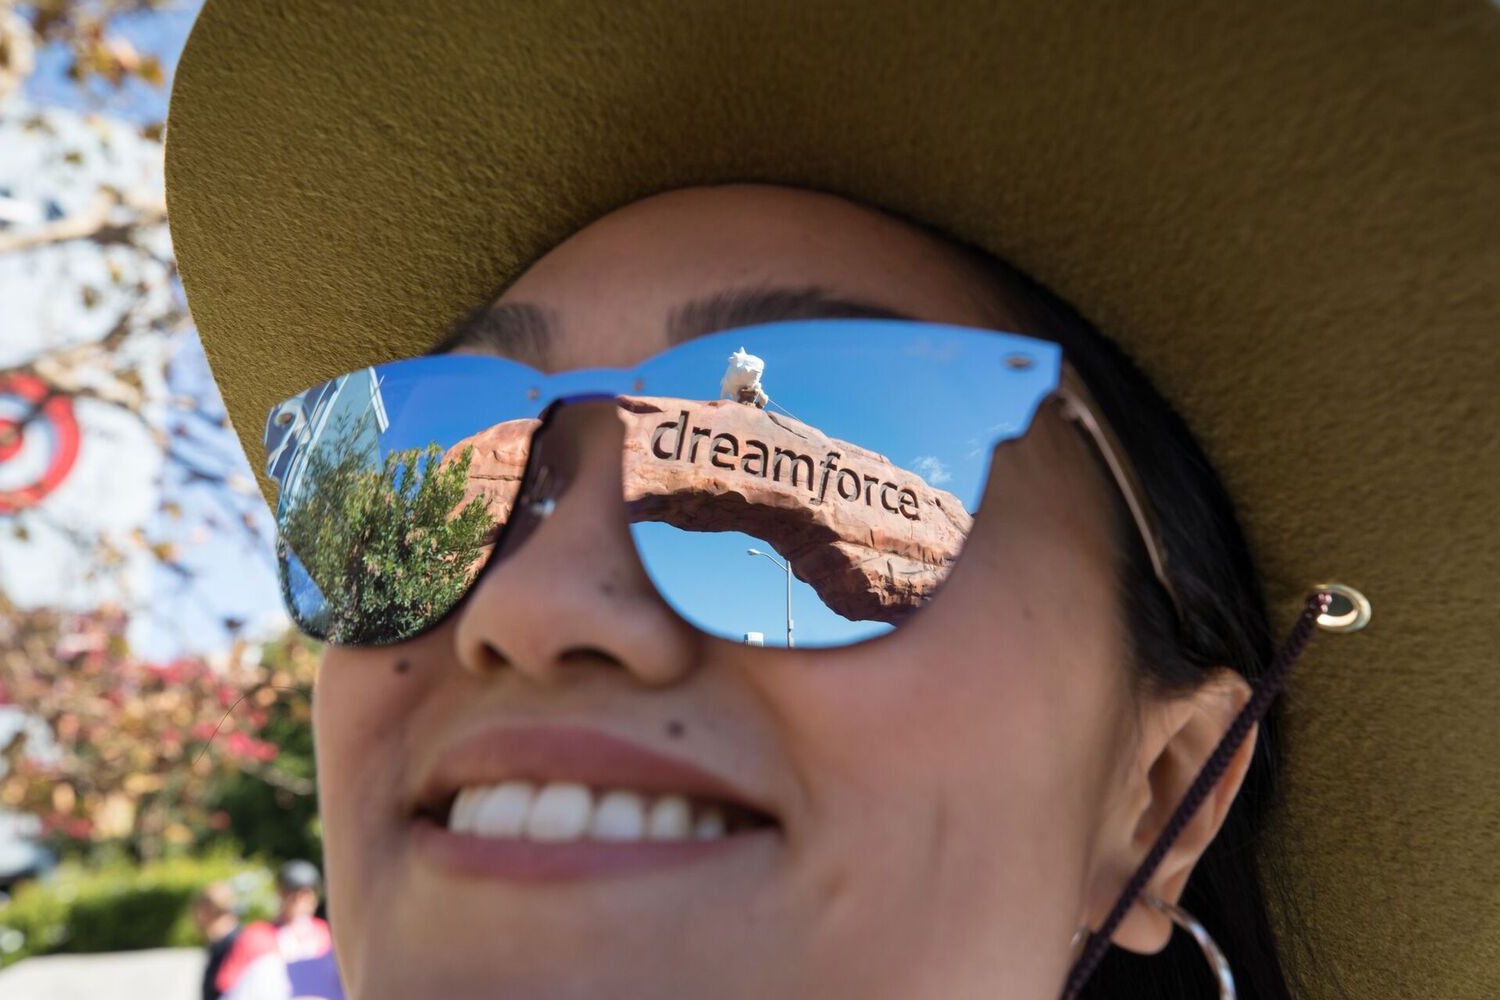 Entrada do Dreamforce reflete em óculos de mulher sorrindo.